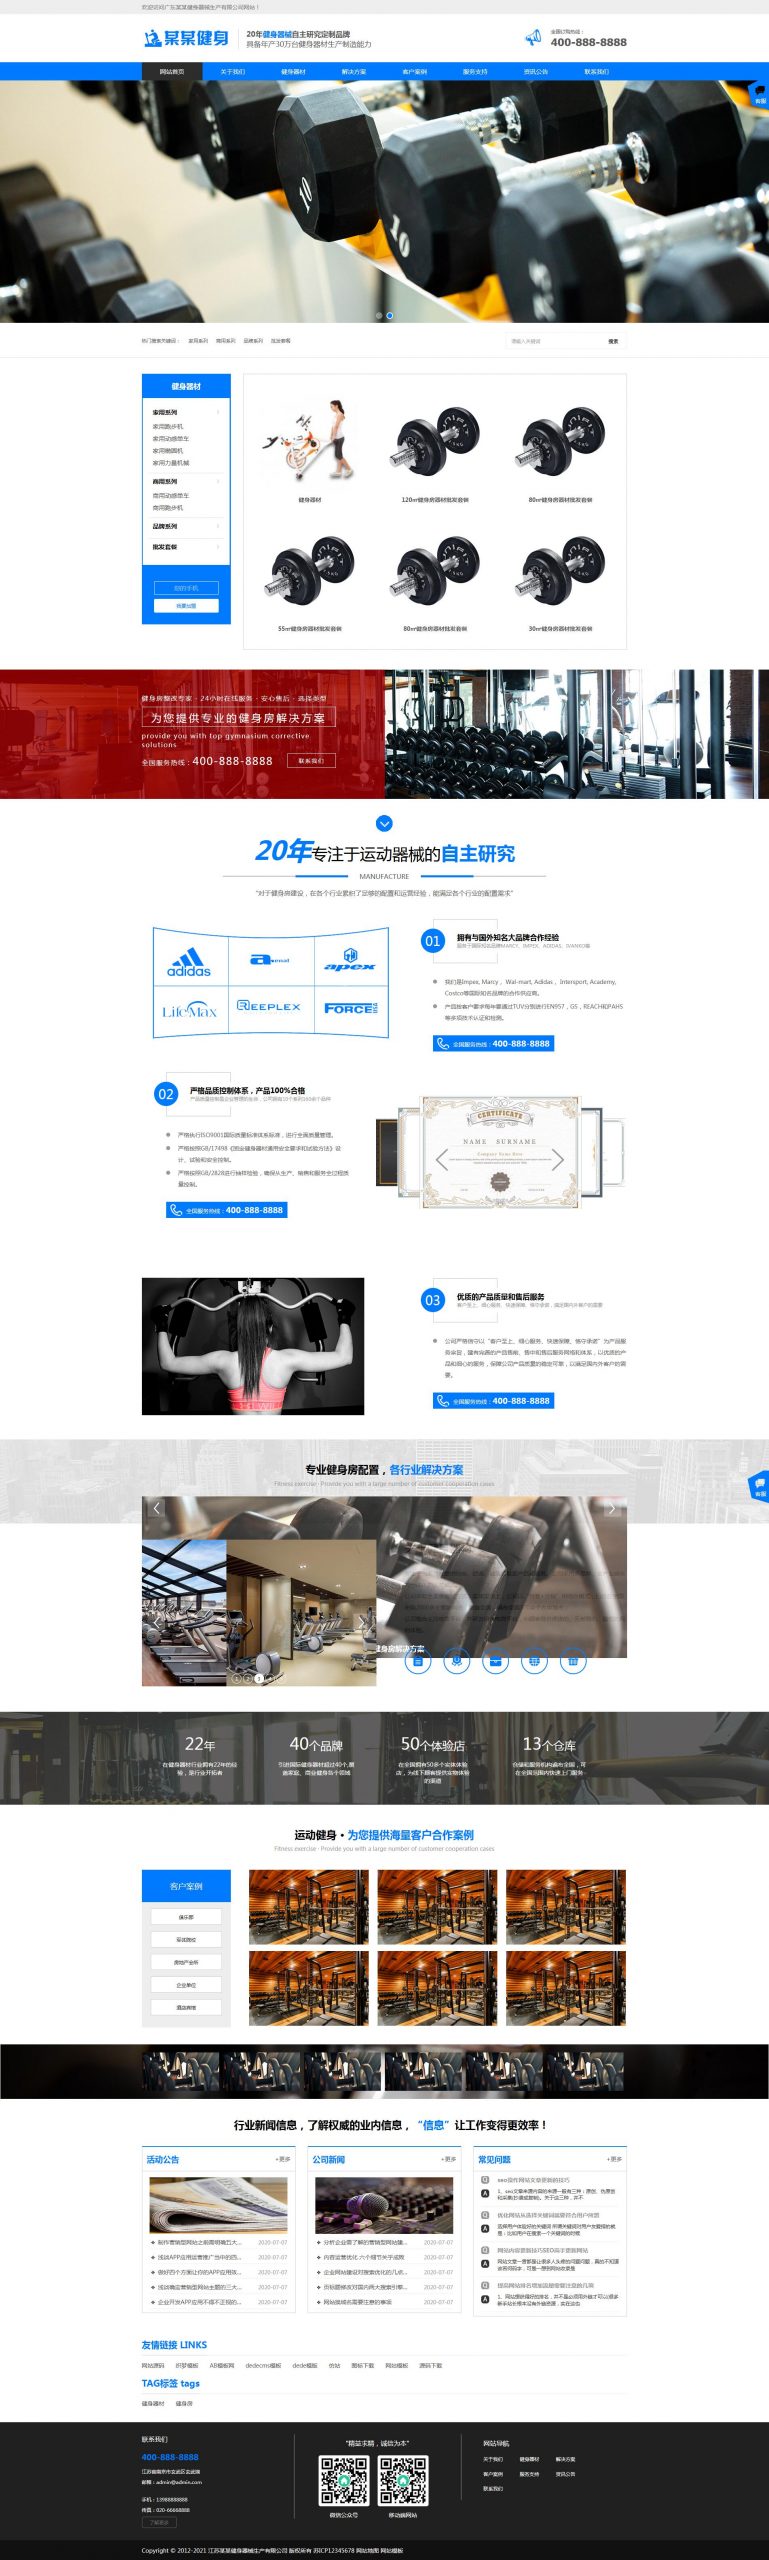 【织梦模板】蓝色响应式营销型运动健身器械器材企业网站模板 (自适应手机端)